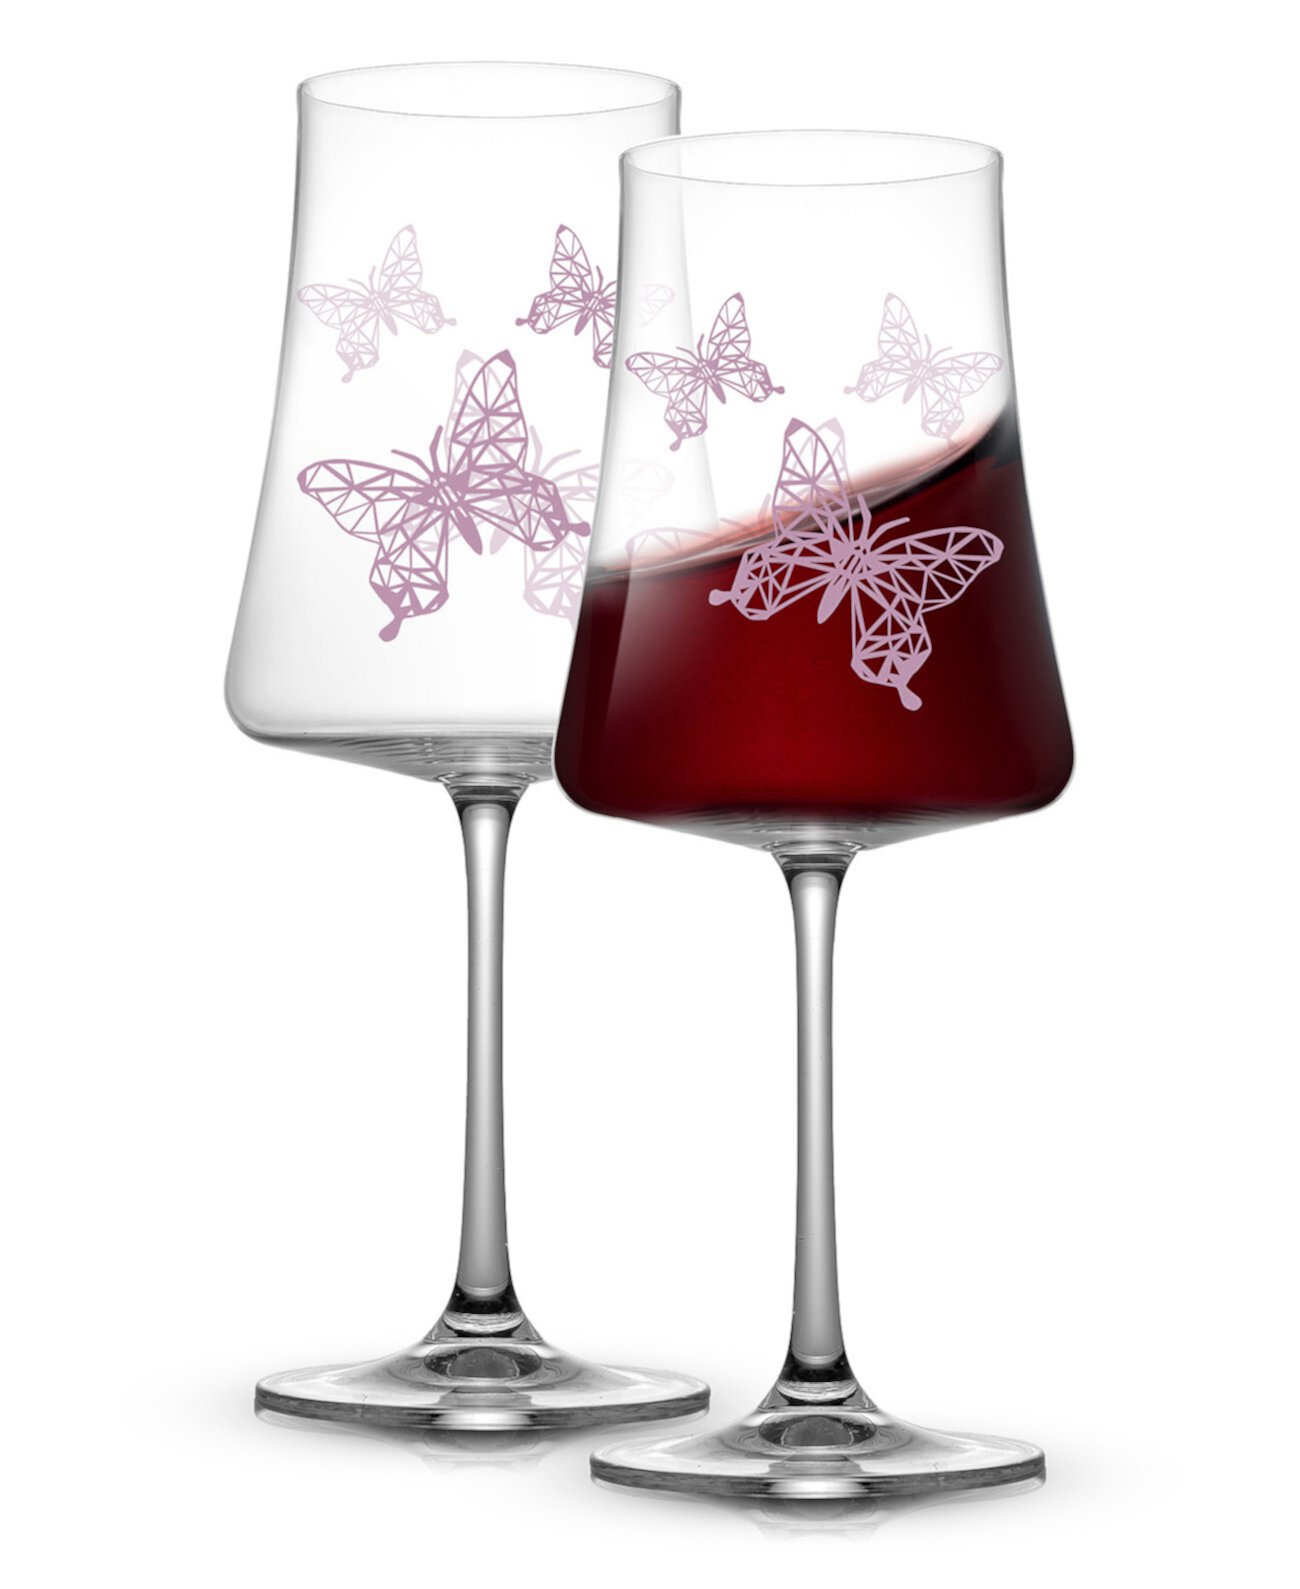 Хрустальные бокалы для красного вина Meadow Butterfly, набор из 2 шт. JoyJolt